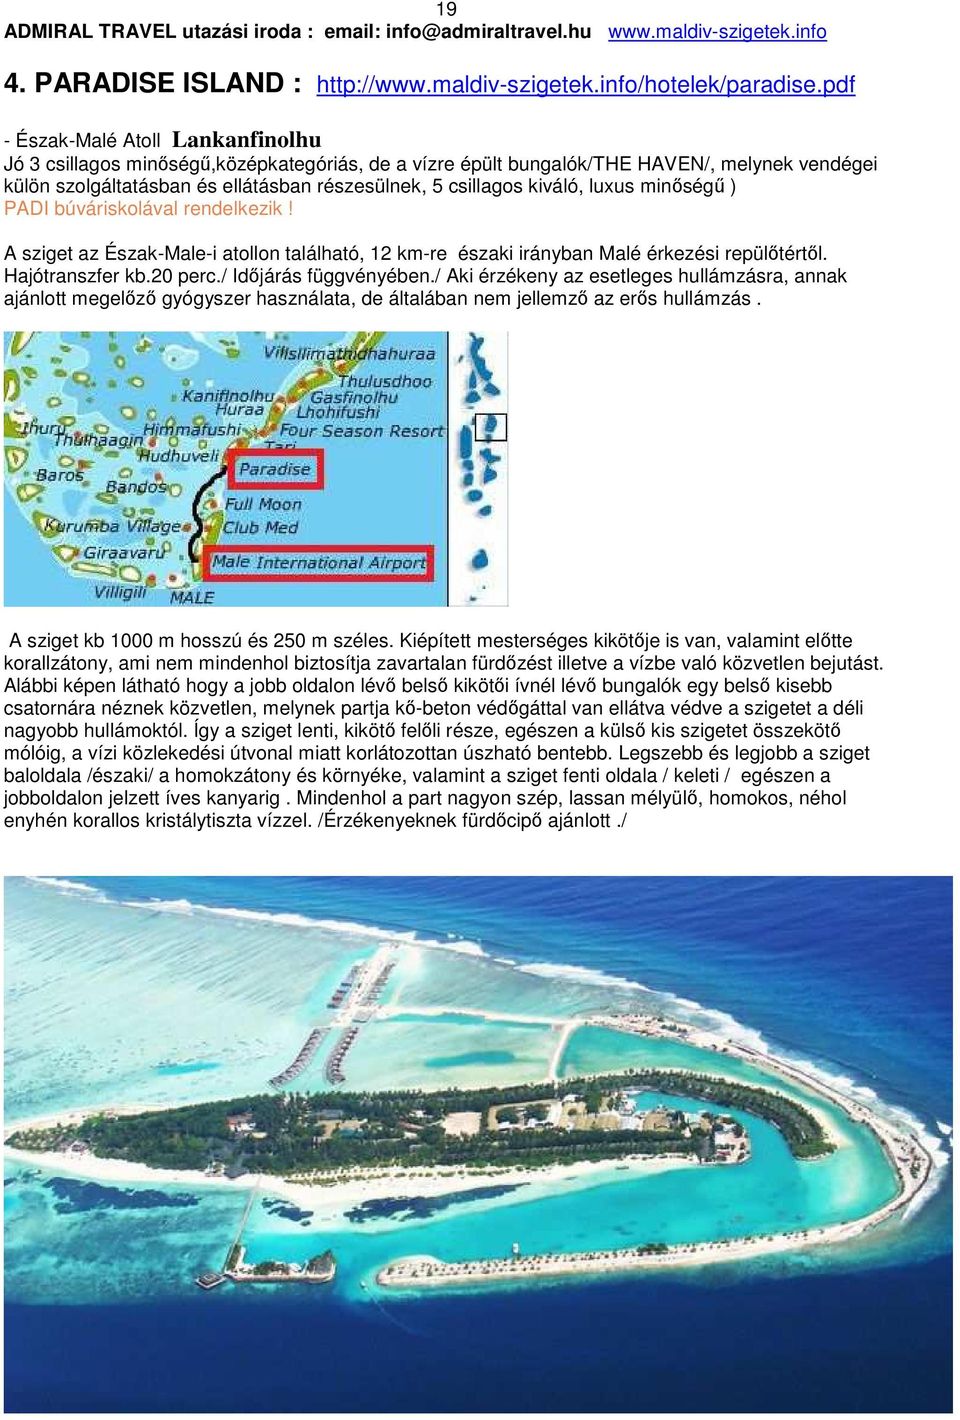 kiváló, luxus minőségű ) PADI búváriskolával rendelkezik! A sziget az Észak-Male-i atollon található, 12 km-re északi irányban Malé érkezési repülőtértől. Hajótranszfer kb.20 perc.